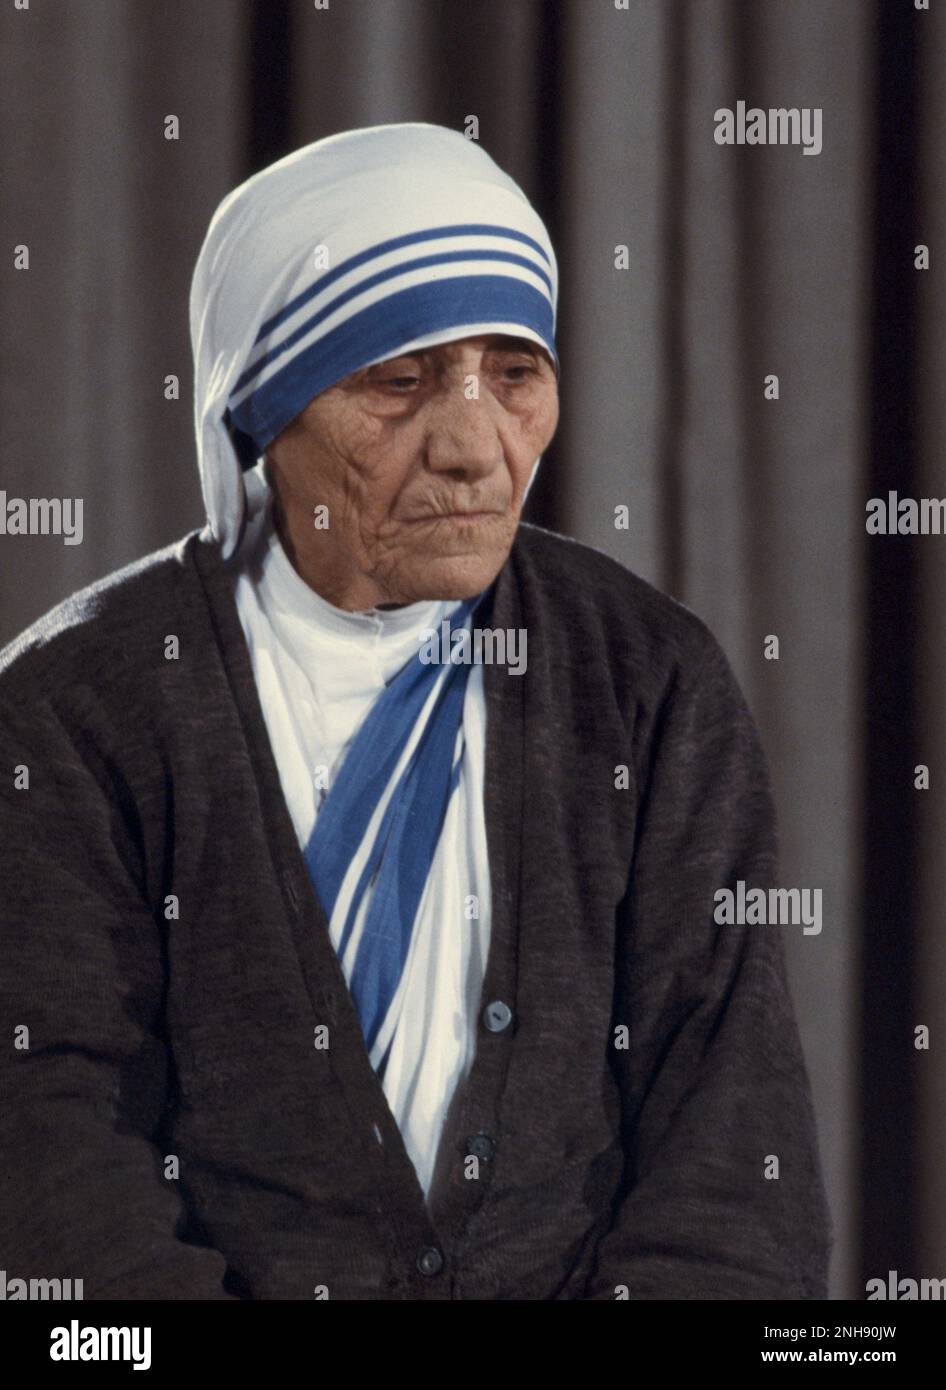 Madre Teresa nel 1971. Madre Teresa (1910-1997), onorata nella Chiesa cattolica come Santa Teresa di Calcutta, è stata una suora cattolica albanese-indiana e missionaria. Fotografia di Bernard Gotfryd. Foto Stock